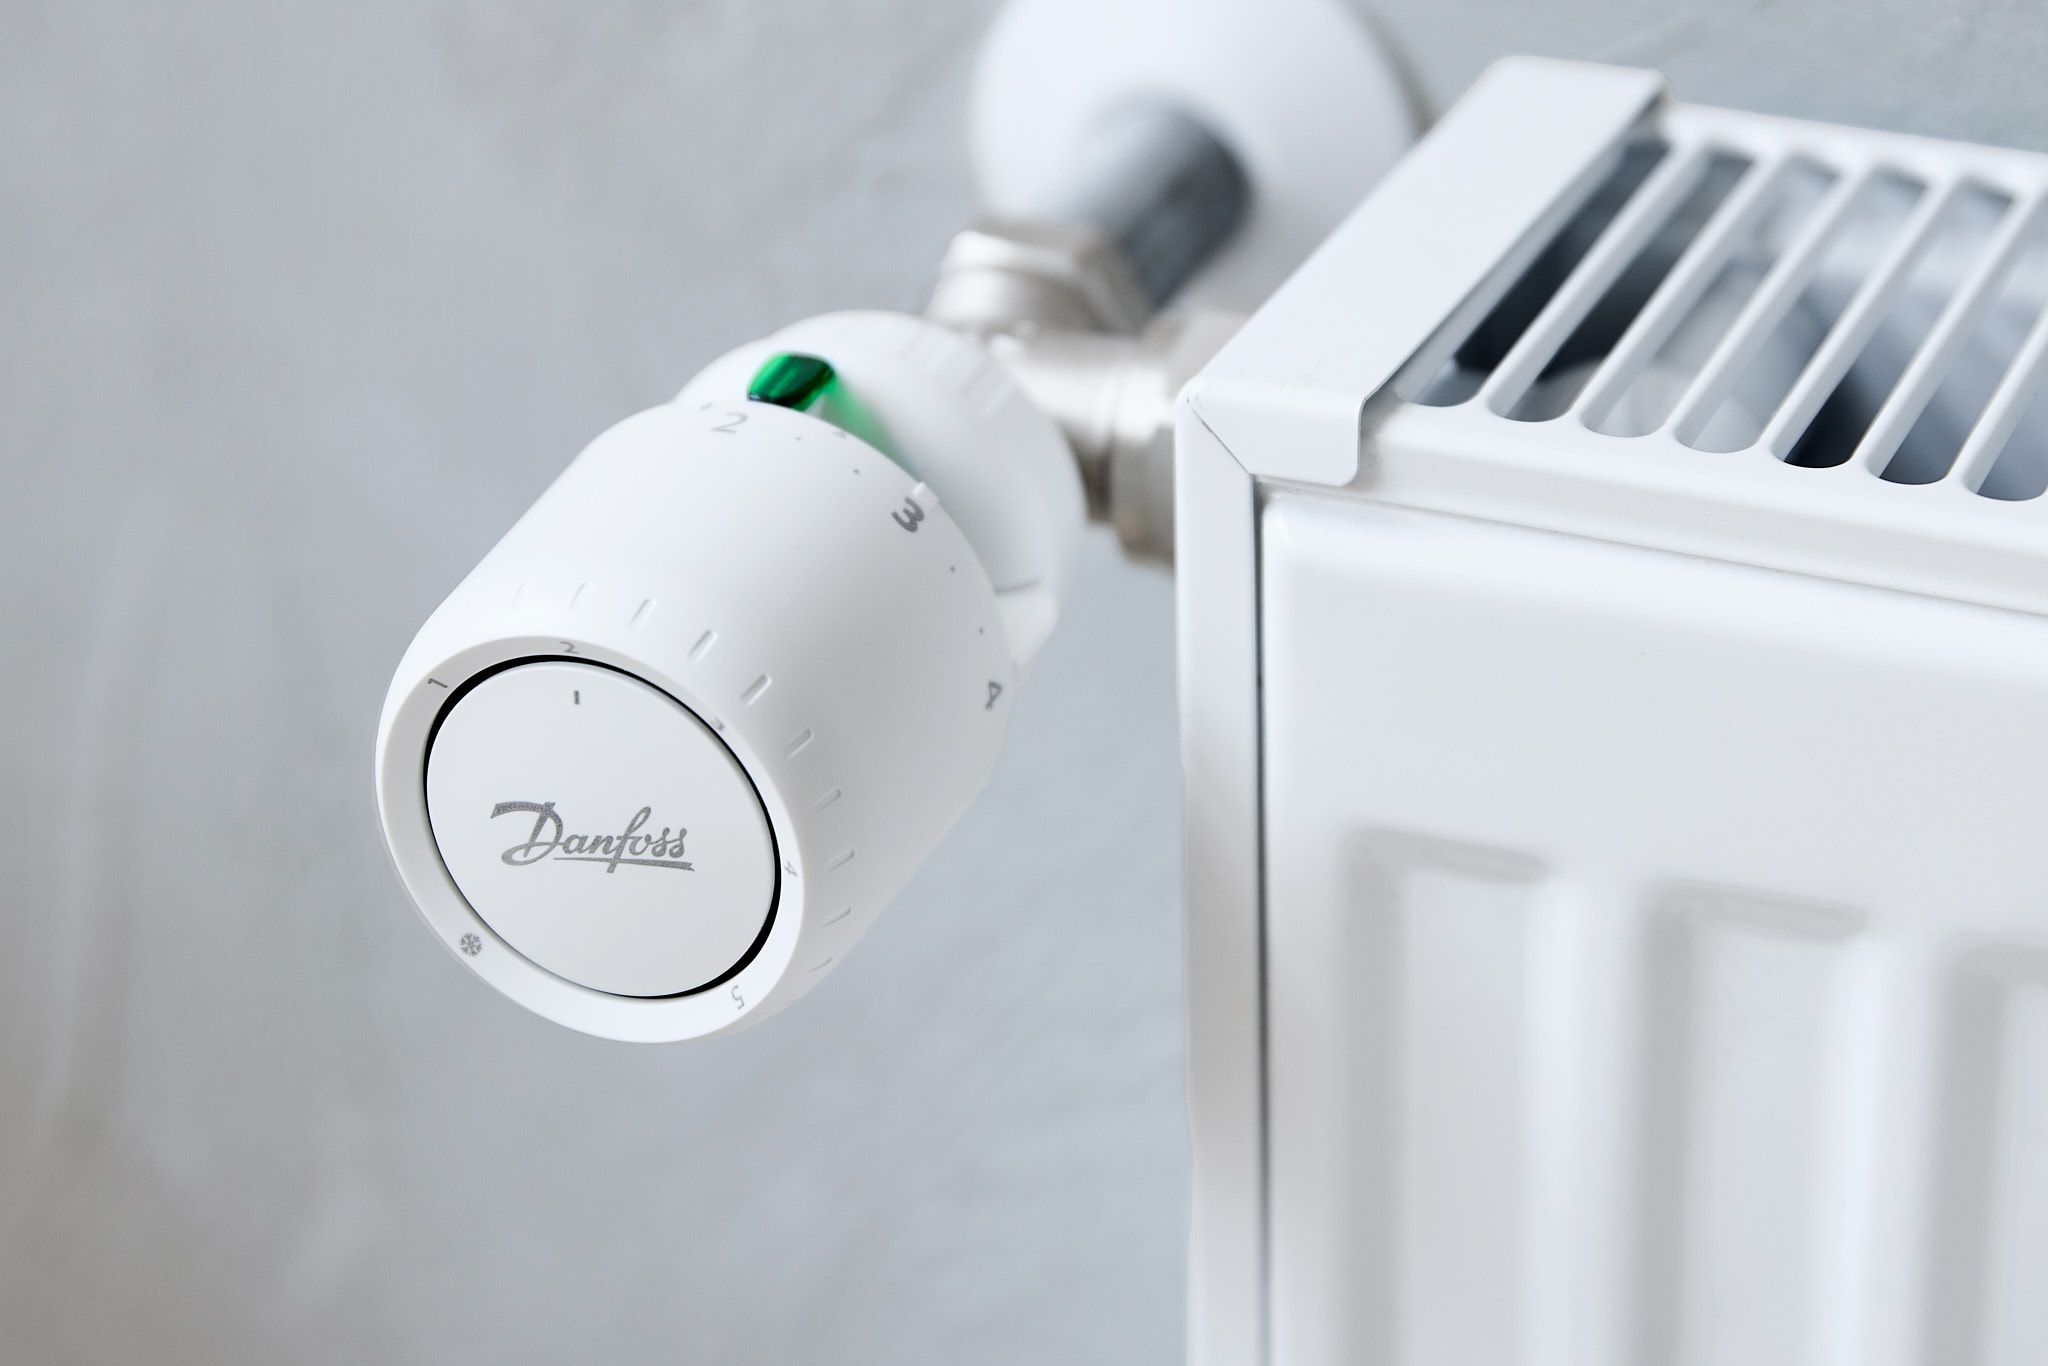 Recreatie Promoten Voorkomen Radiator thermostats - Mechnical thermostats or smart thermostats | Danfoss